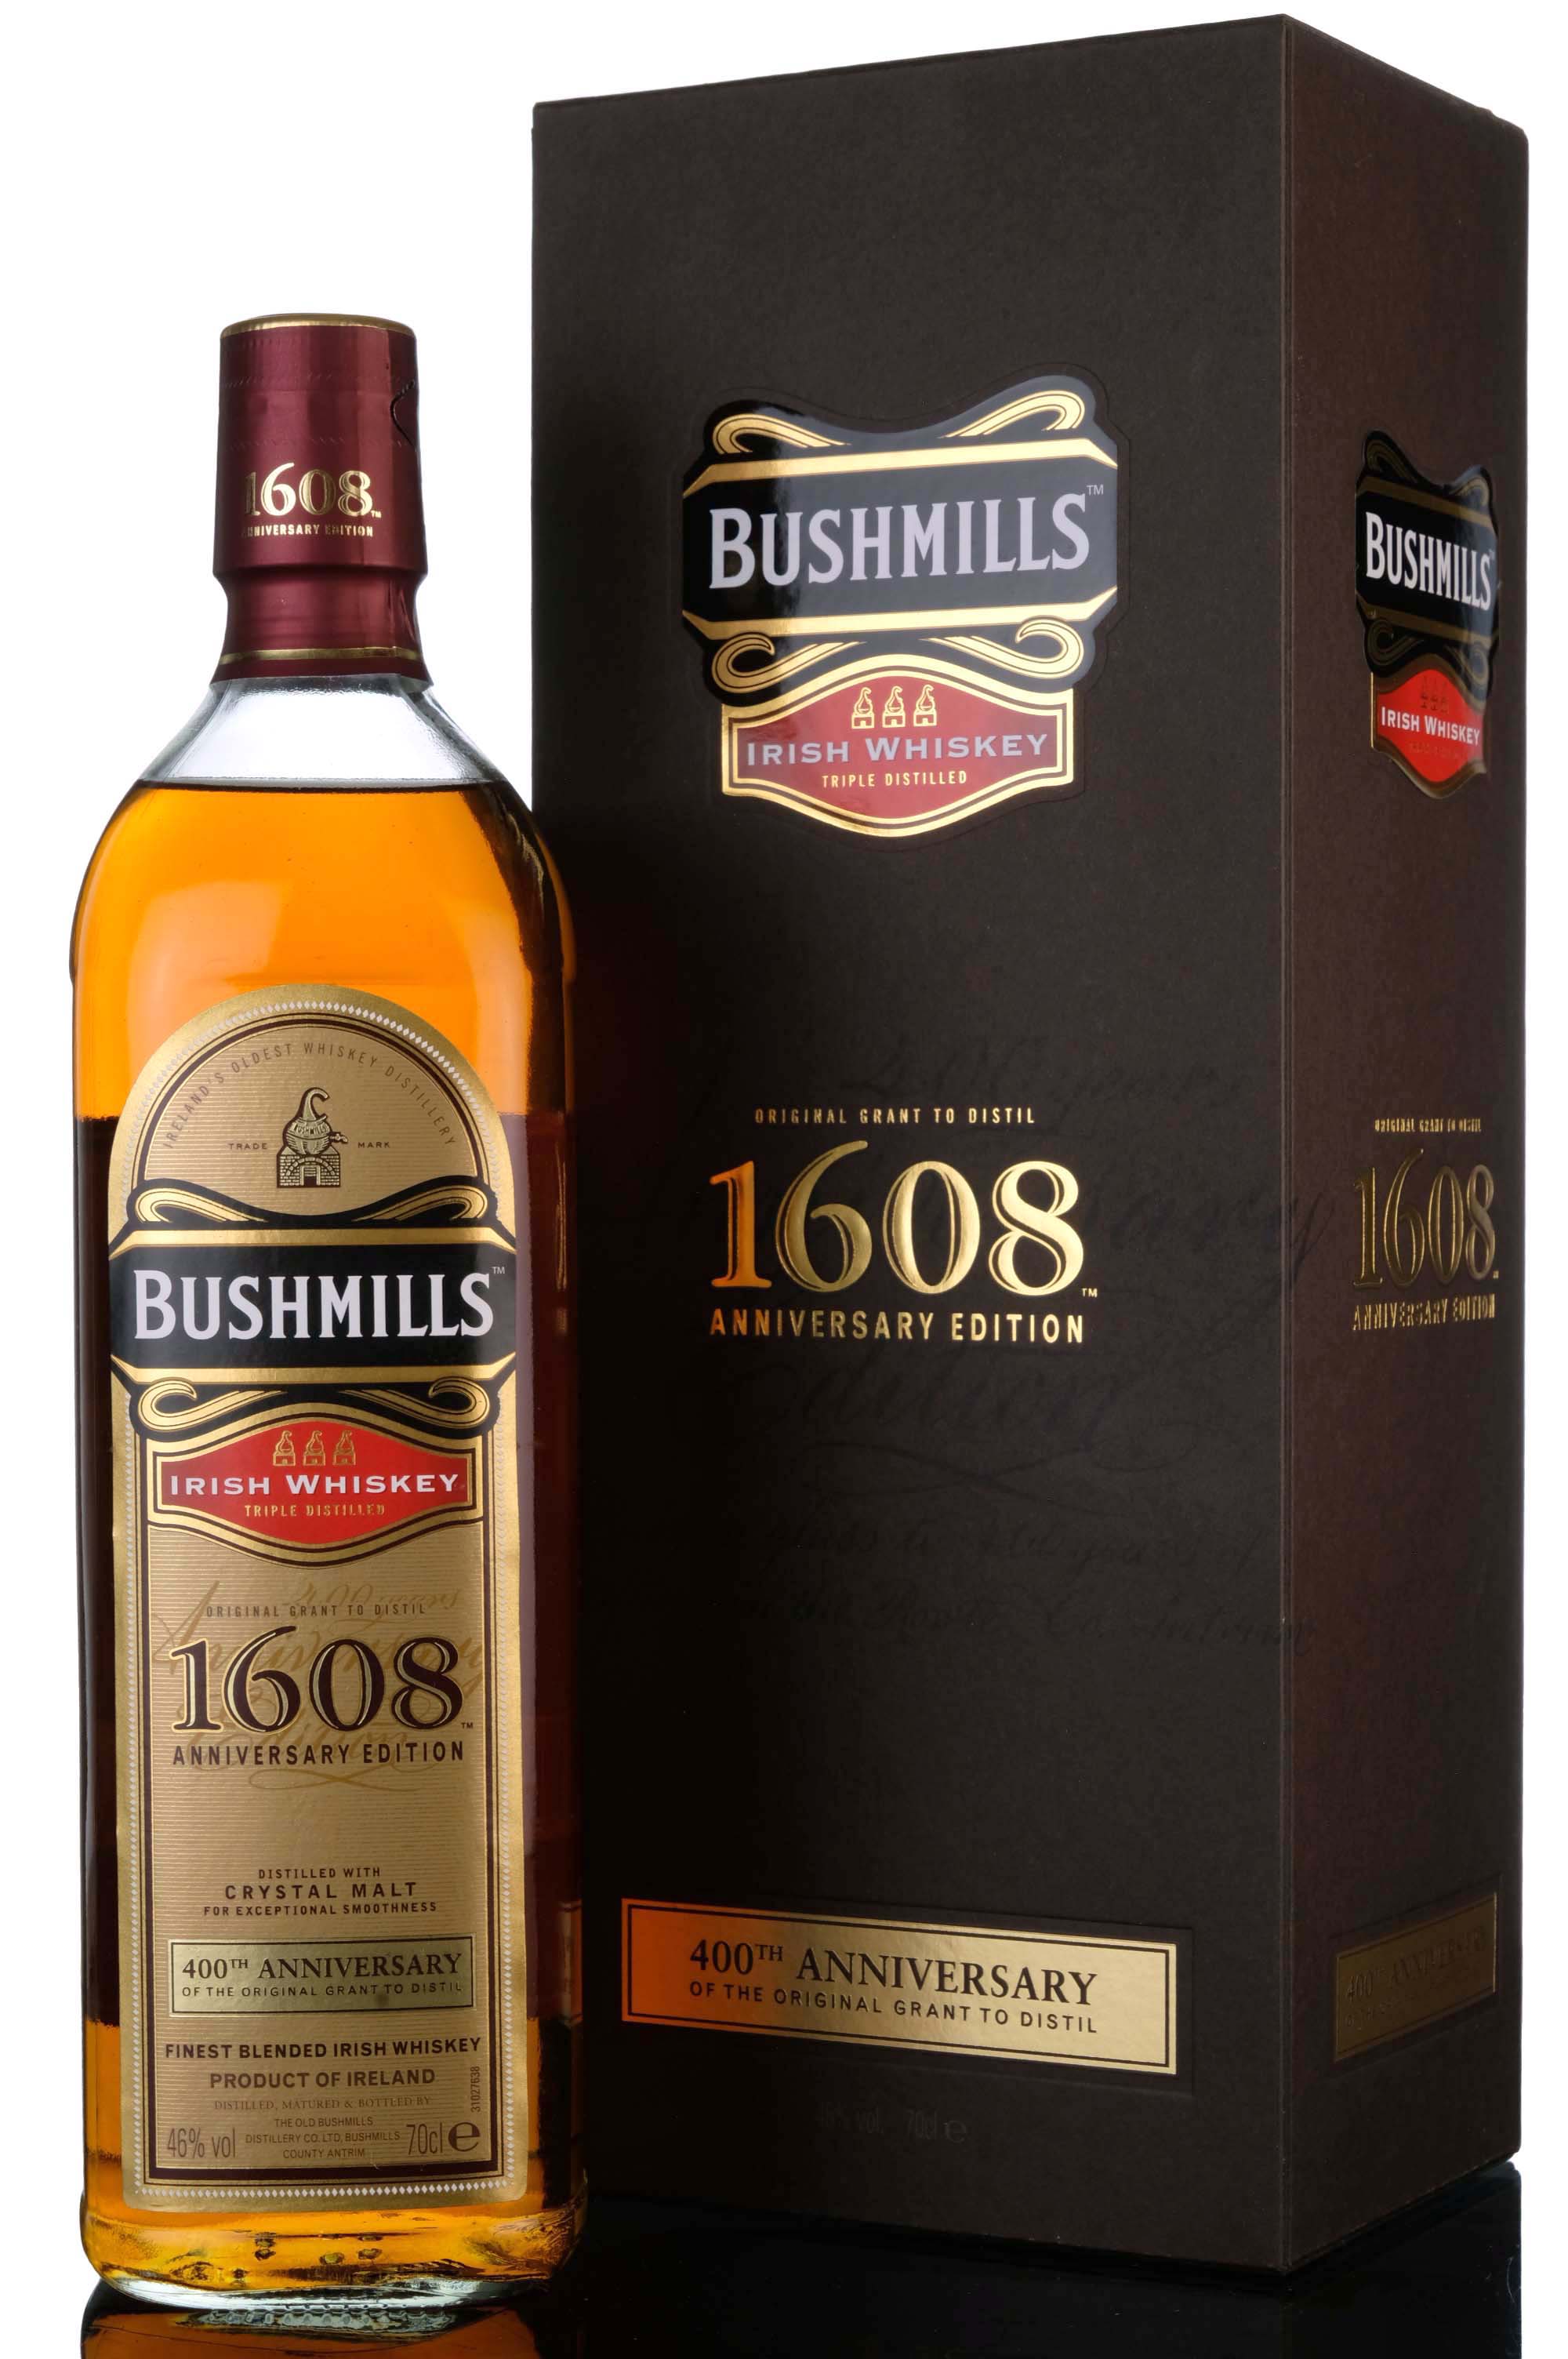 Bushmills 1608 400th Anniversary Of The Original Grant To Distill - 2008 Release